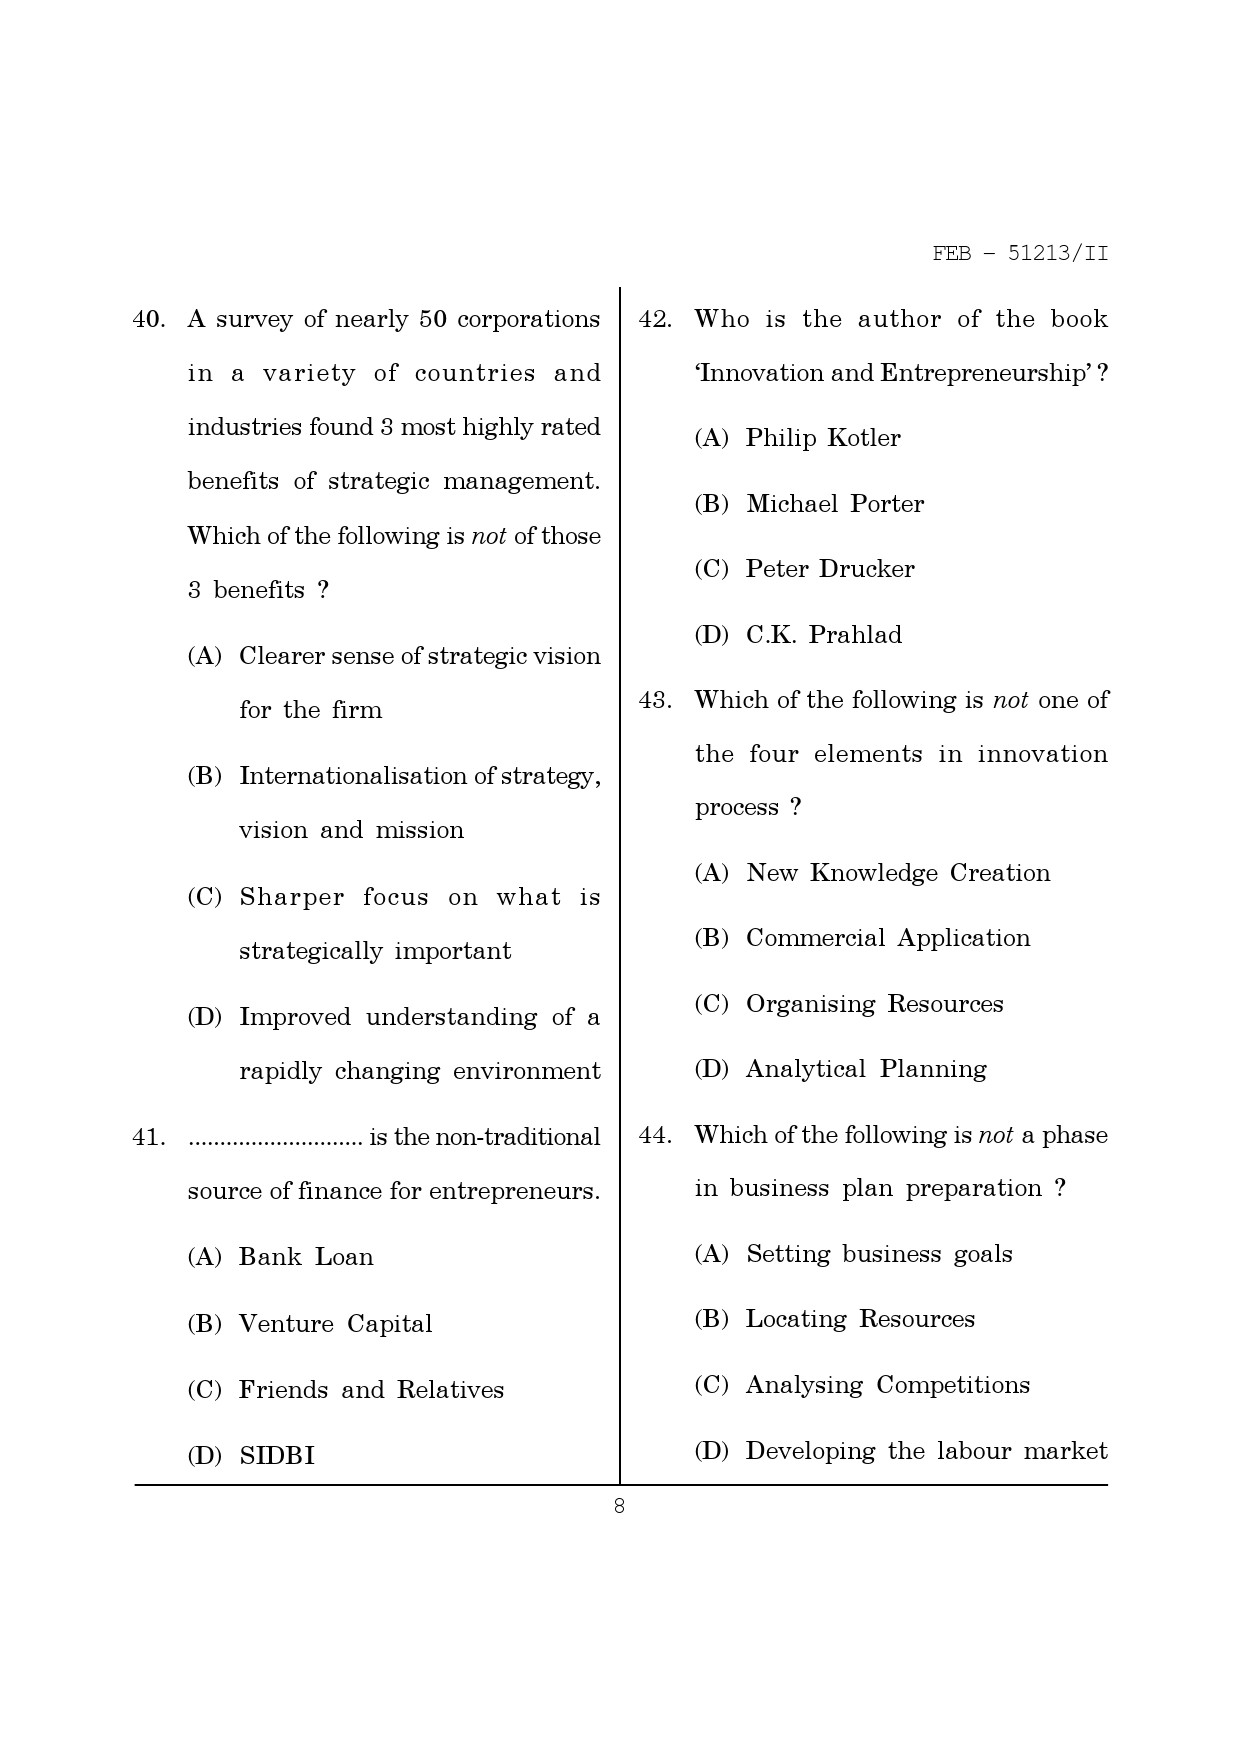 Maharashtra SET Management Question Paper II February 2013 8